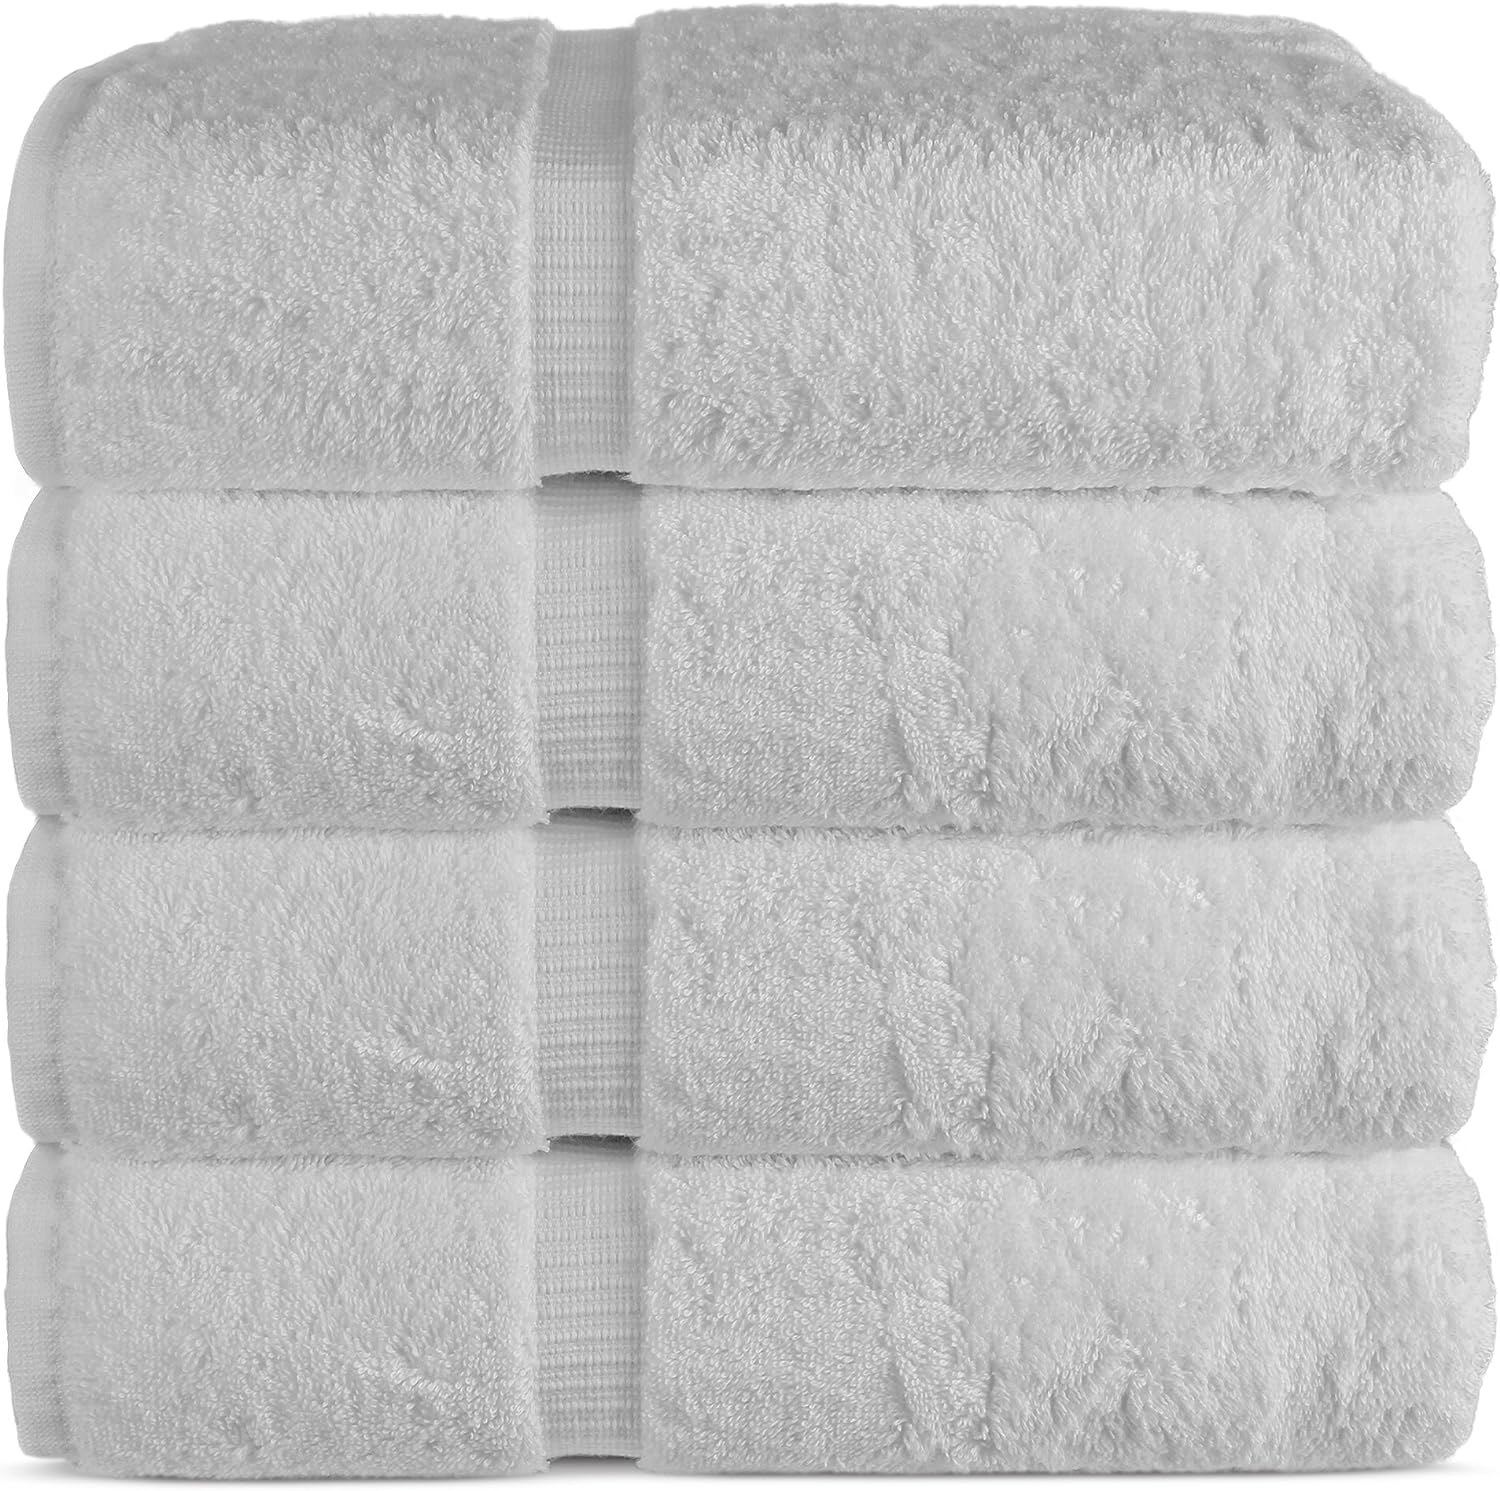  Hammam Linen - Juego de toallas pequeñas de algodón turco  auténtico, prémium, con calidad de hotel, máxima suavidad y absorción,  ideales para la cara, manos, cocina o limpieza (color blanco) 